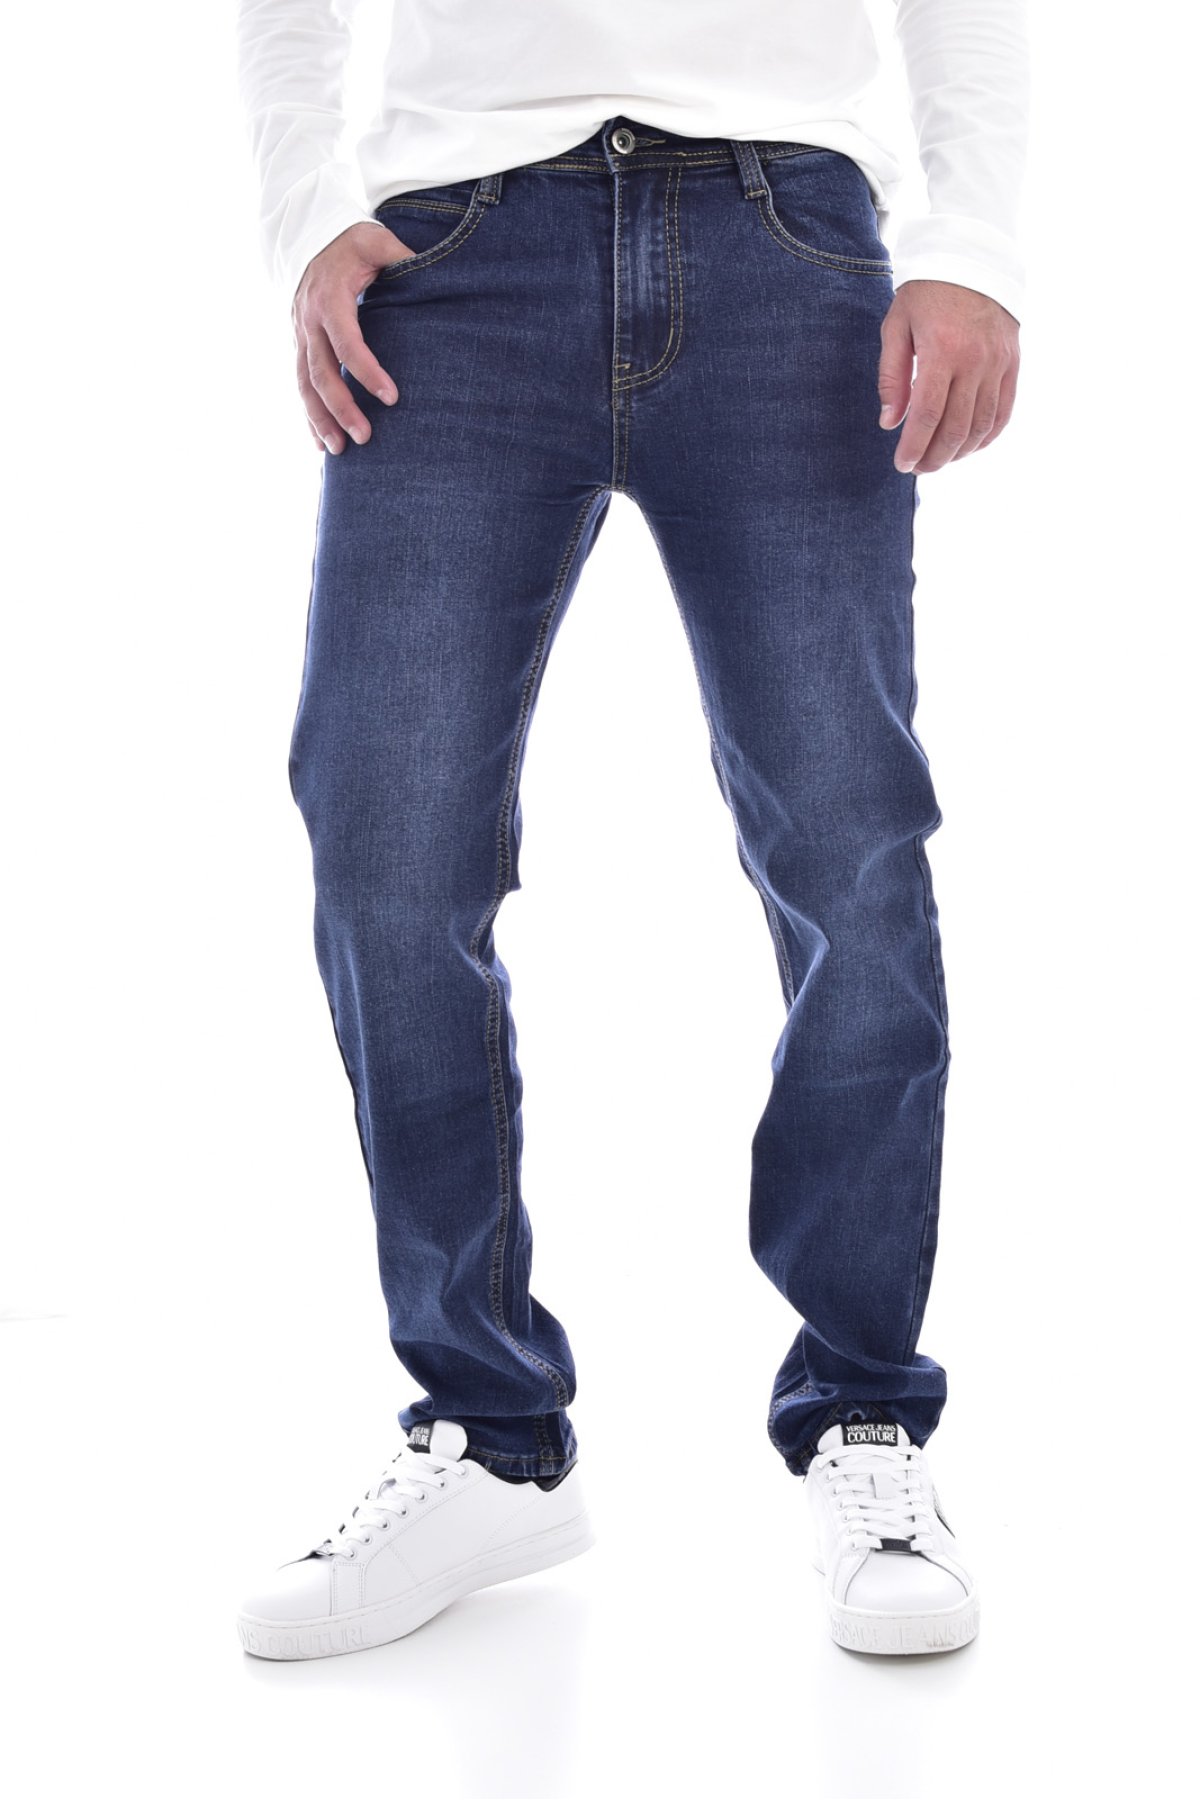 Giani 5 X2057 džíny modré